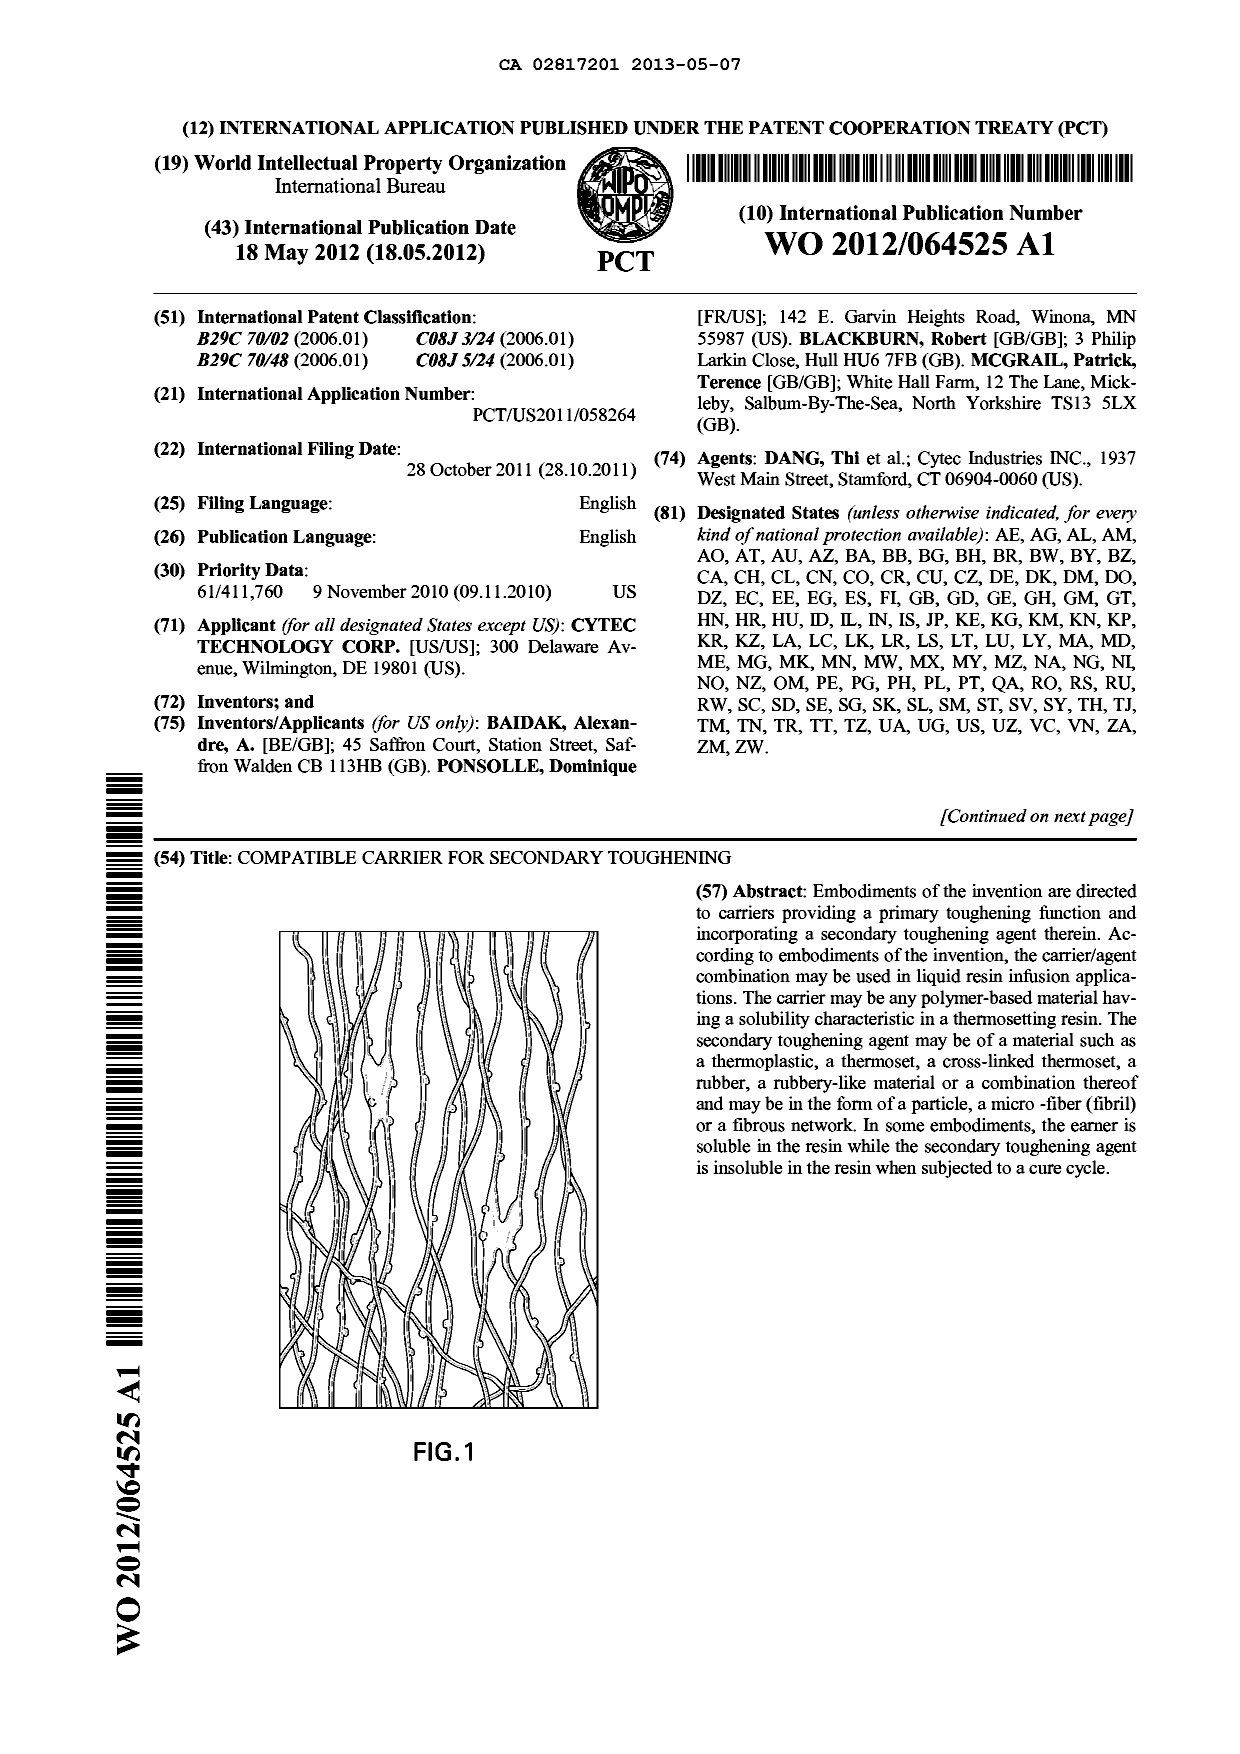 Document de brevet canadien 2817201. Abrégé 20121207. Image 1 de 2